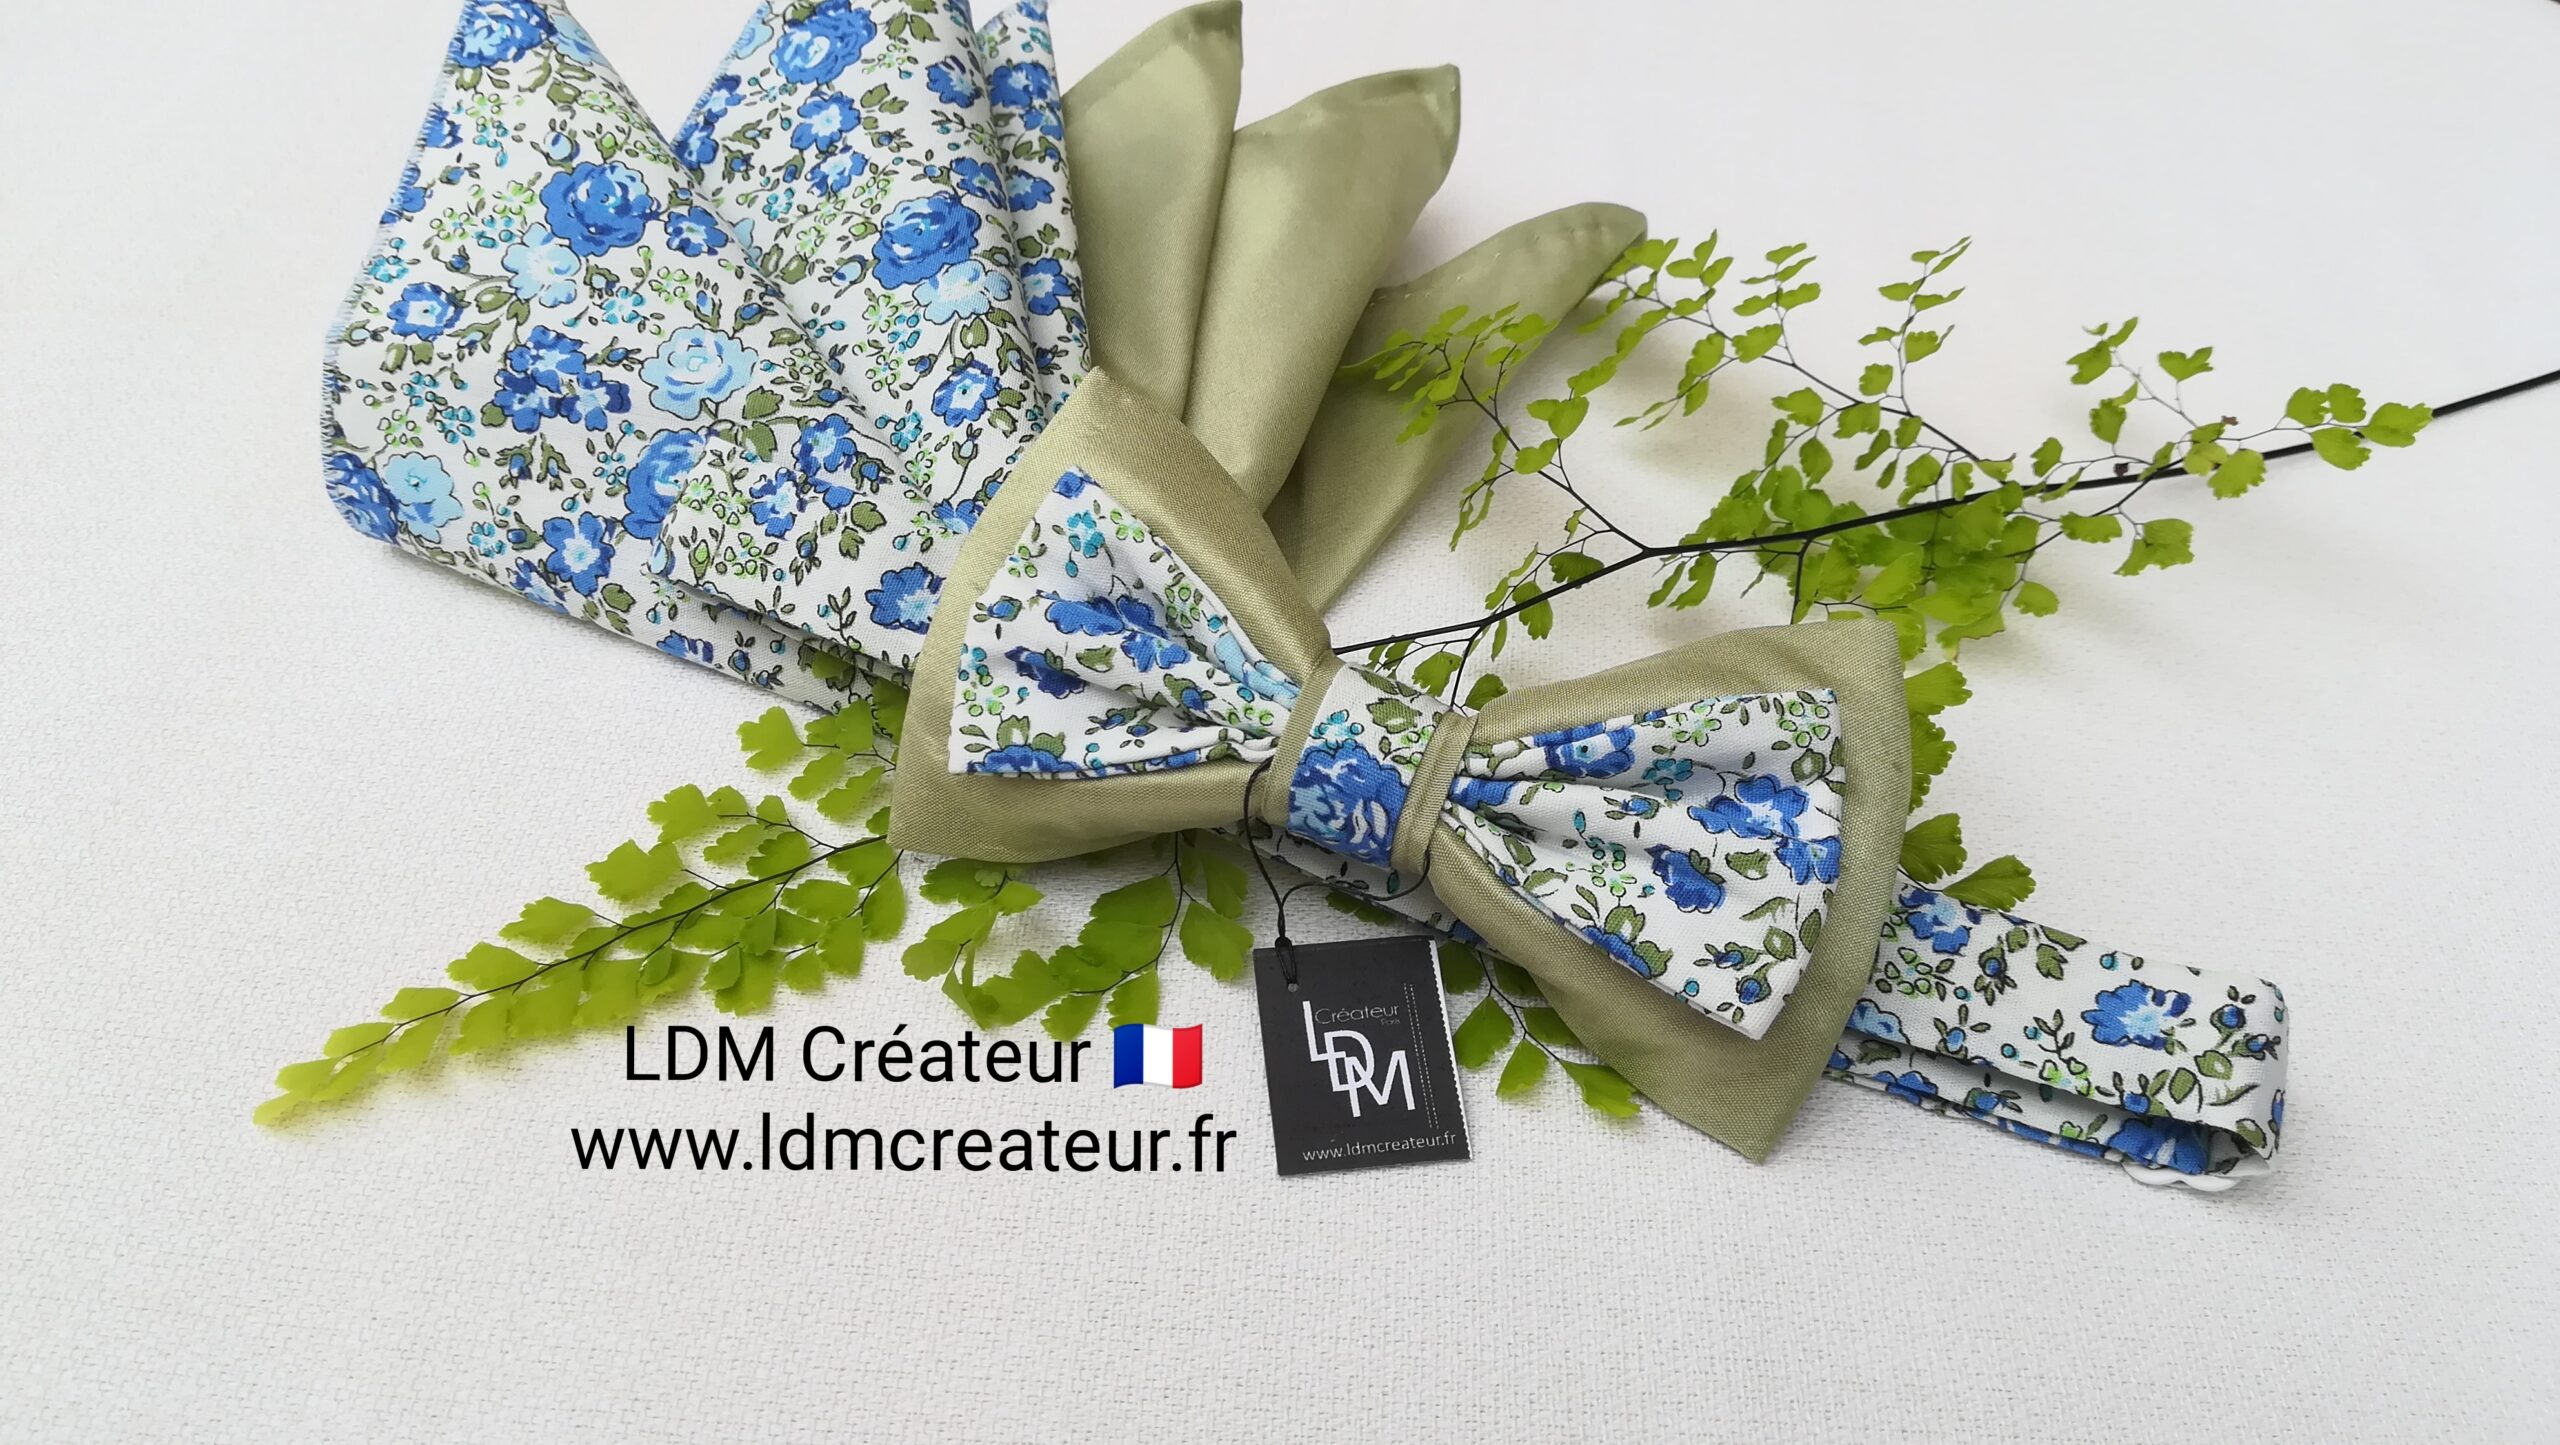 Mariage-noeud-papillon-homme-marié-blanc-vert-bleu-romantique-ceremonie-occitanie-ldmcreateur